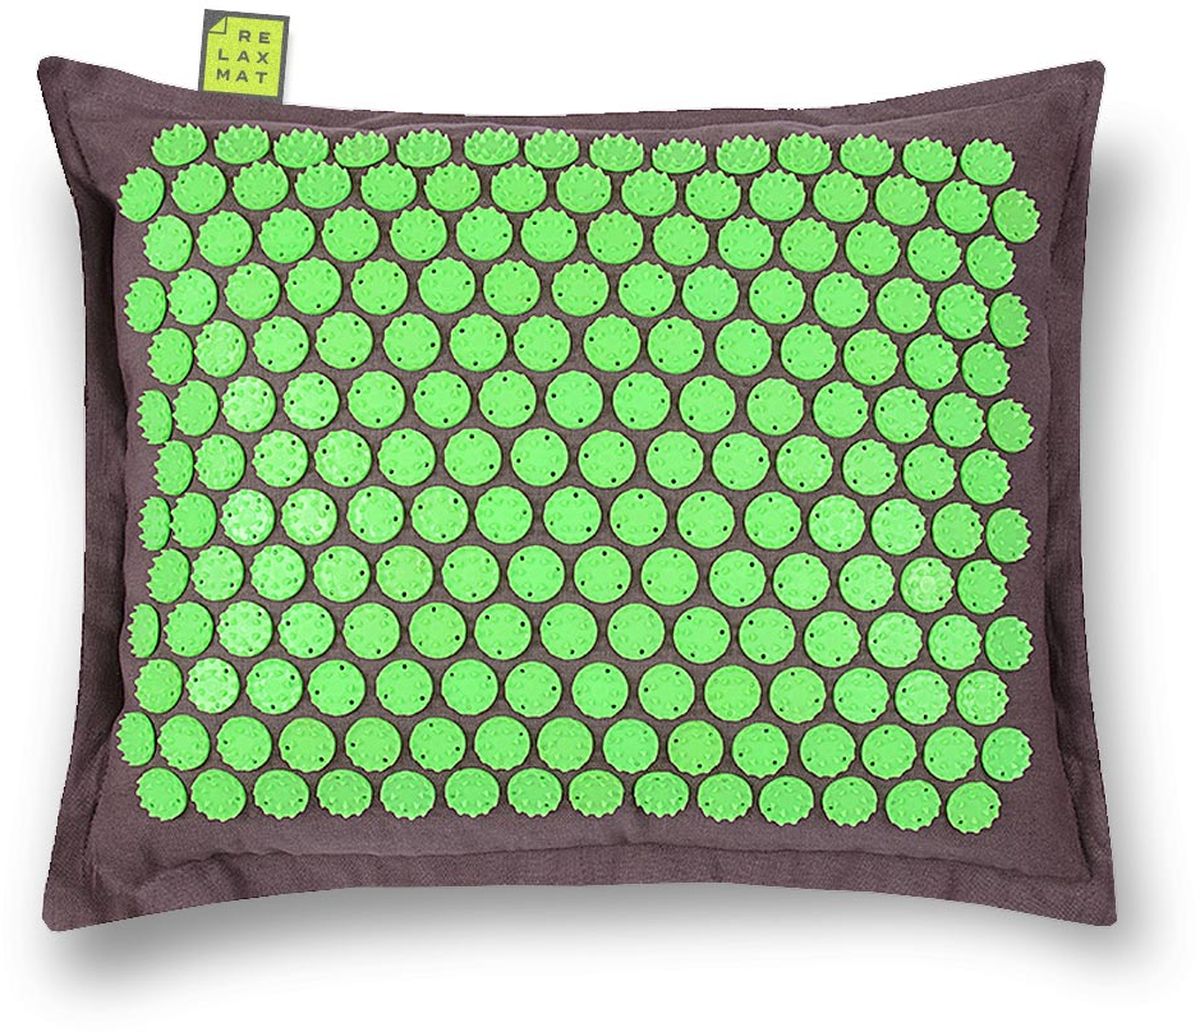 заказать и купить Relaxmat Массажная подушка, цвет: зеленый, графитовый